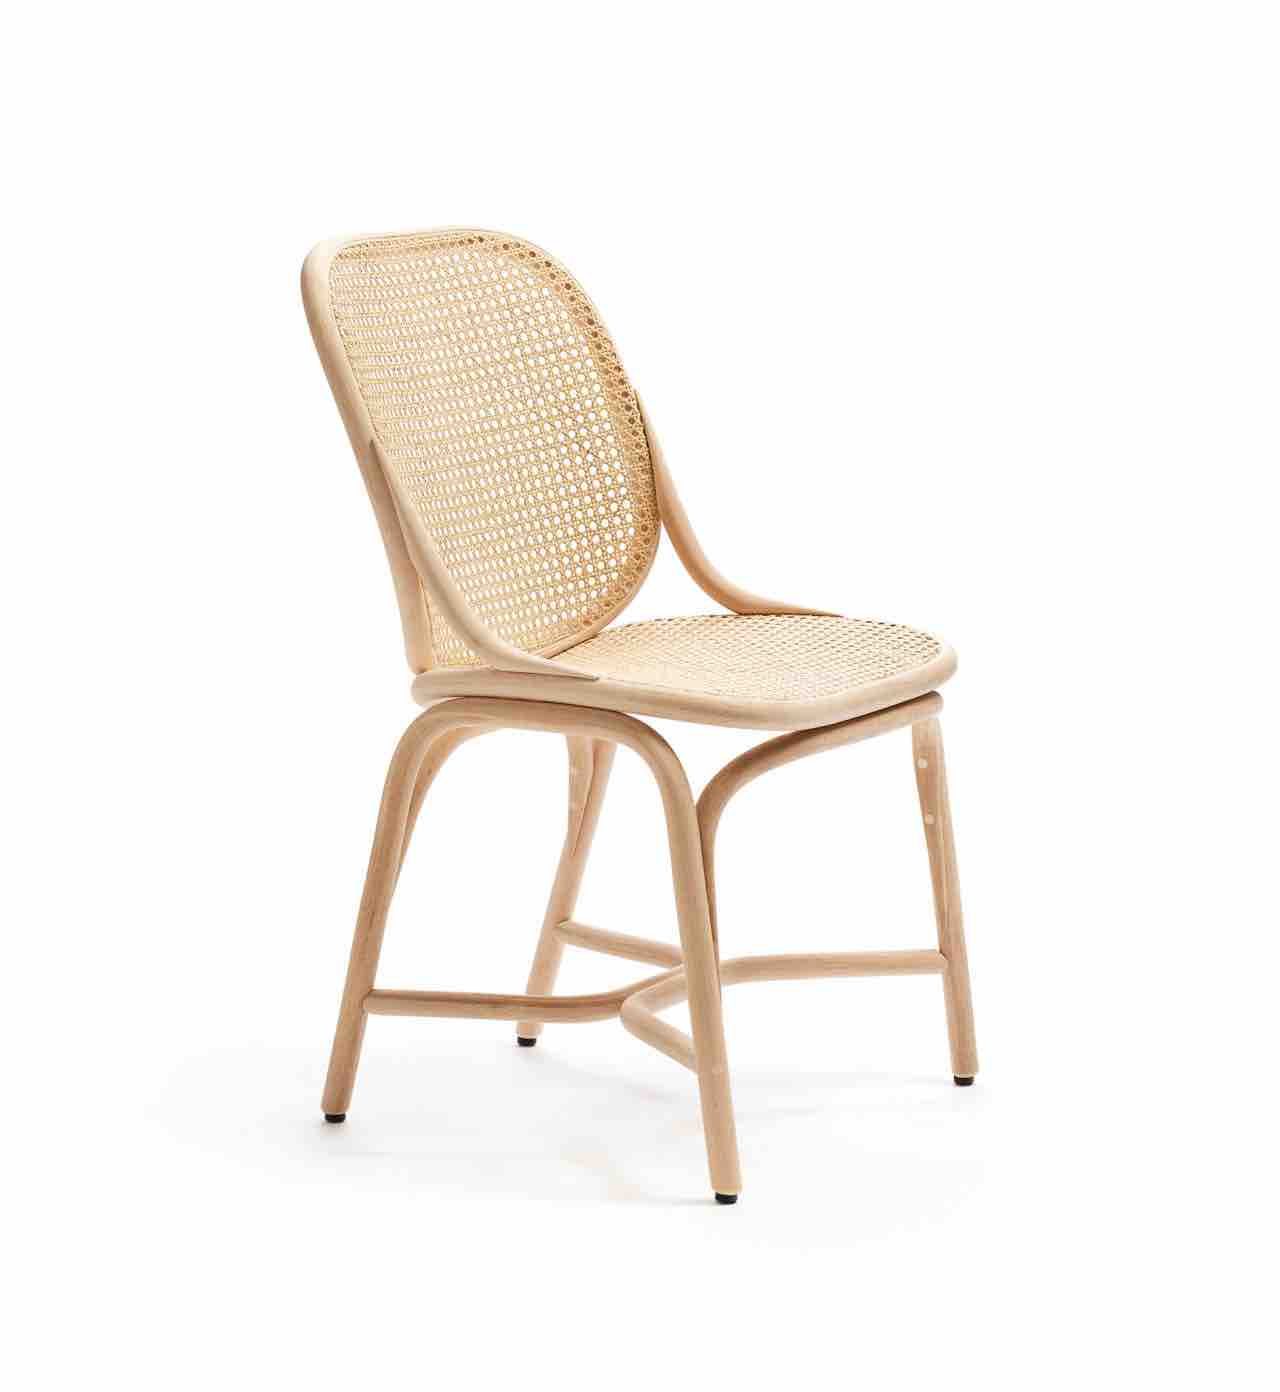 Natural Rattan Chair FN568132